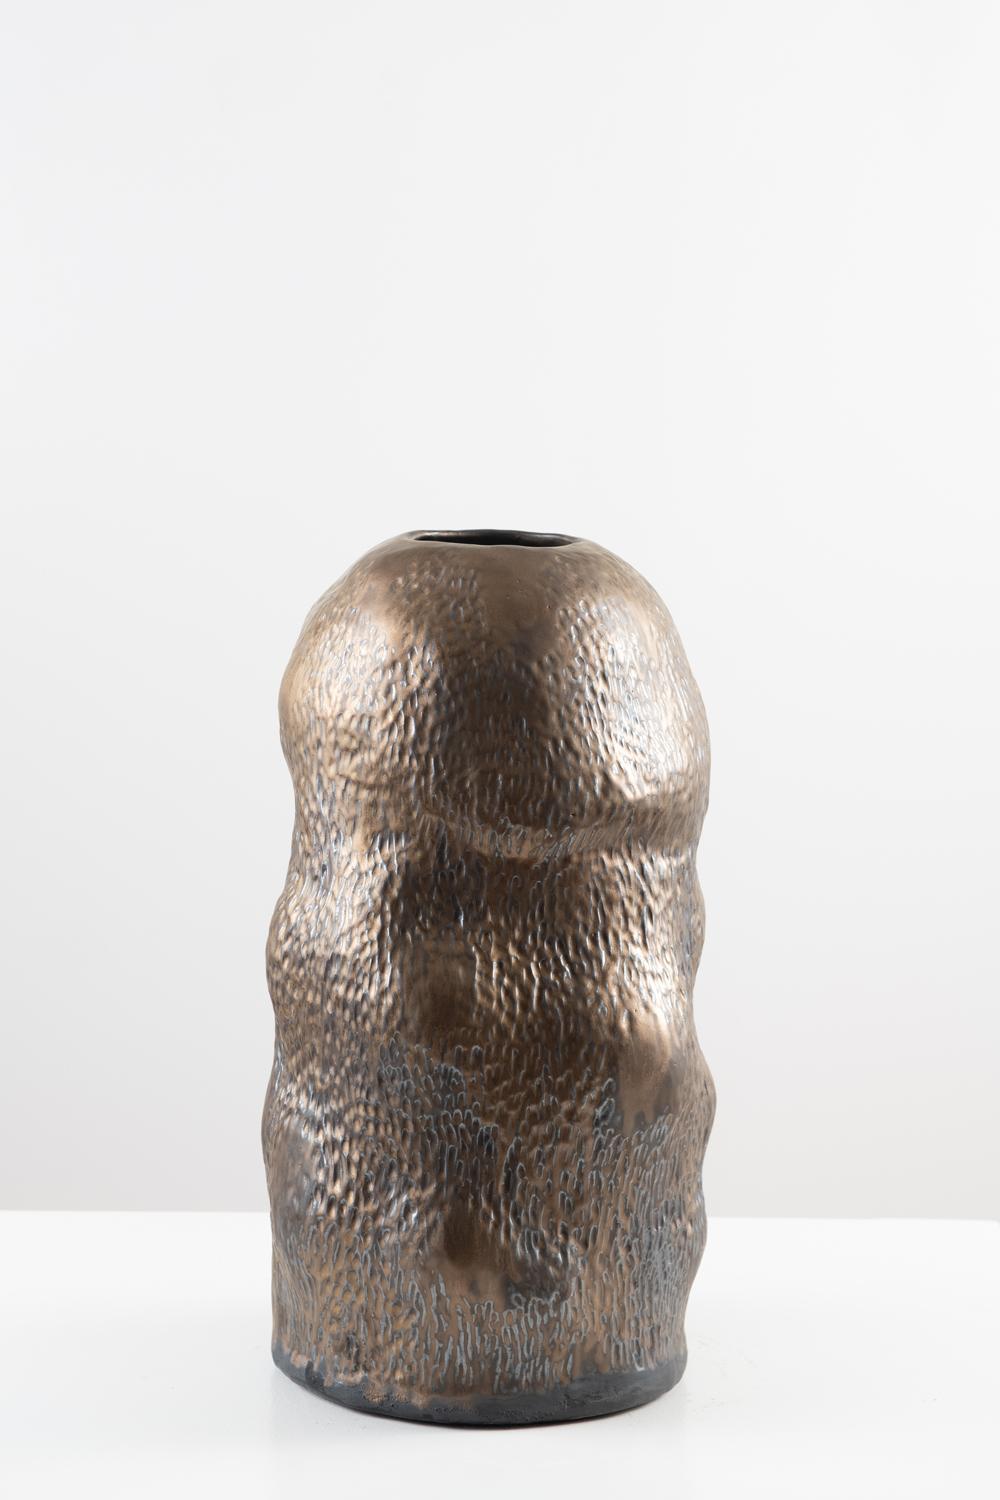 Trish DeMasi
Camille Vessel, 2021
Metallisch glasierte Keramik
9 x 9 x 18 Zoll.